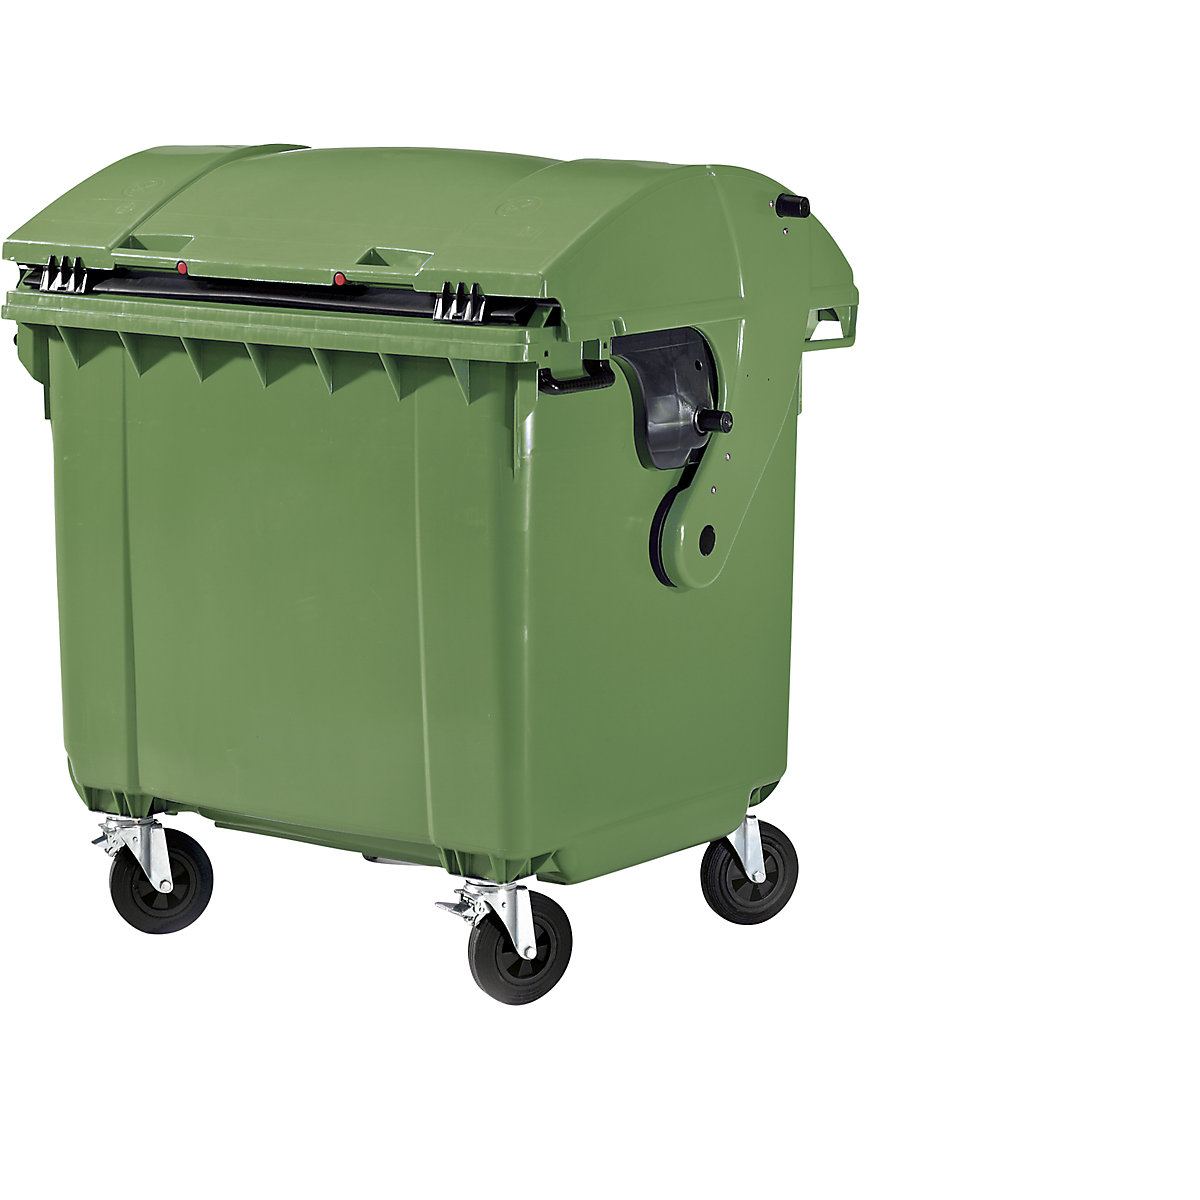 Müllcontainer aus Kunststoff, DIN EN 840, Volumen 1100 l, BxHxT 1360 x 1465 x 1100 mm, Schiebedeckel, Kindersicherung, grün